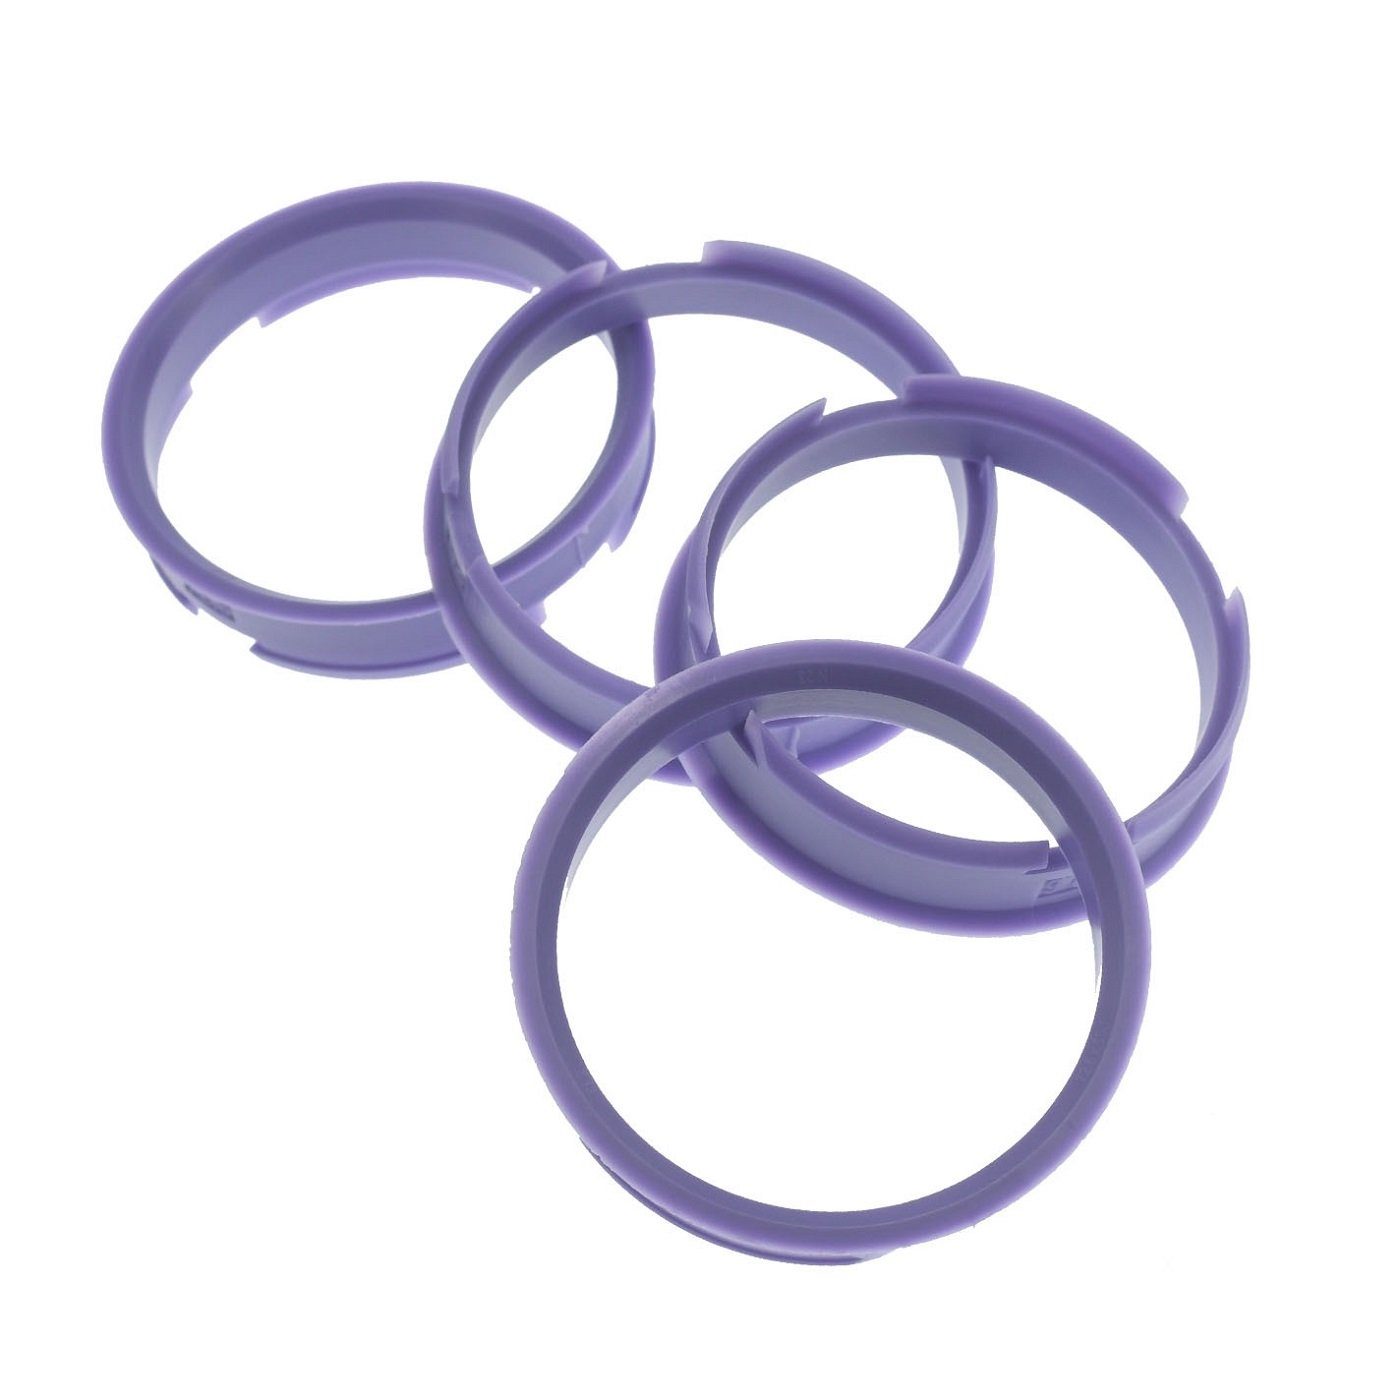 RKC Reifenstift 4X Zentrierringe lila Felgen Ringe Made in Germany, Maße: 72,6 x 66,1 mm